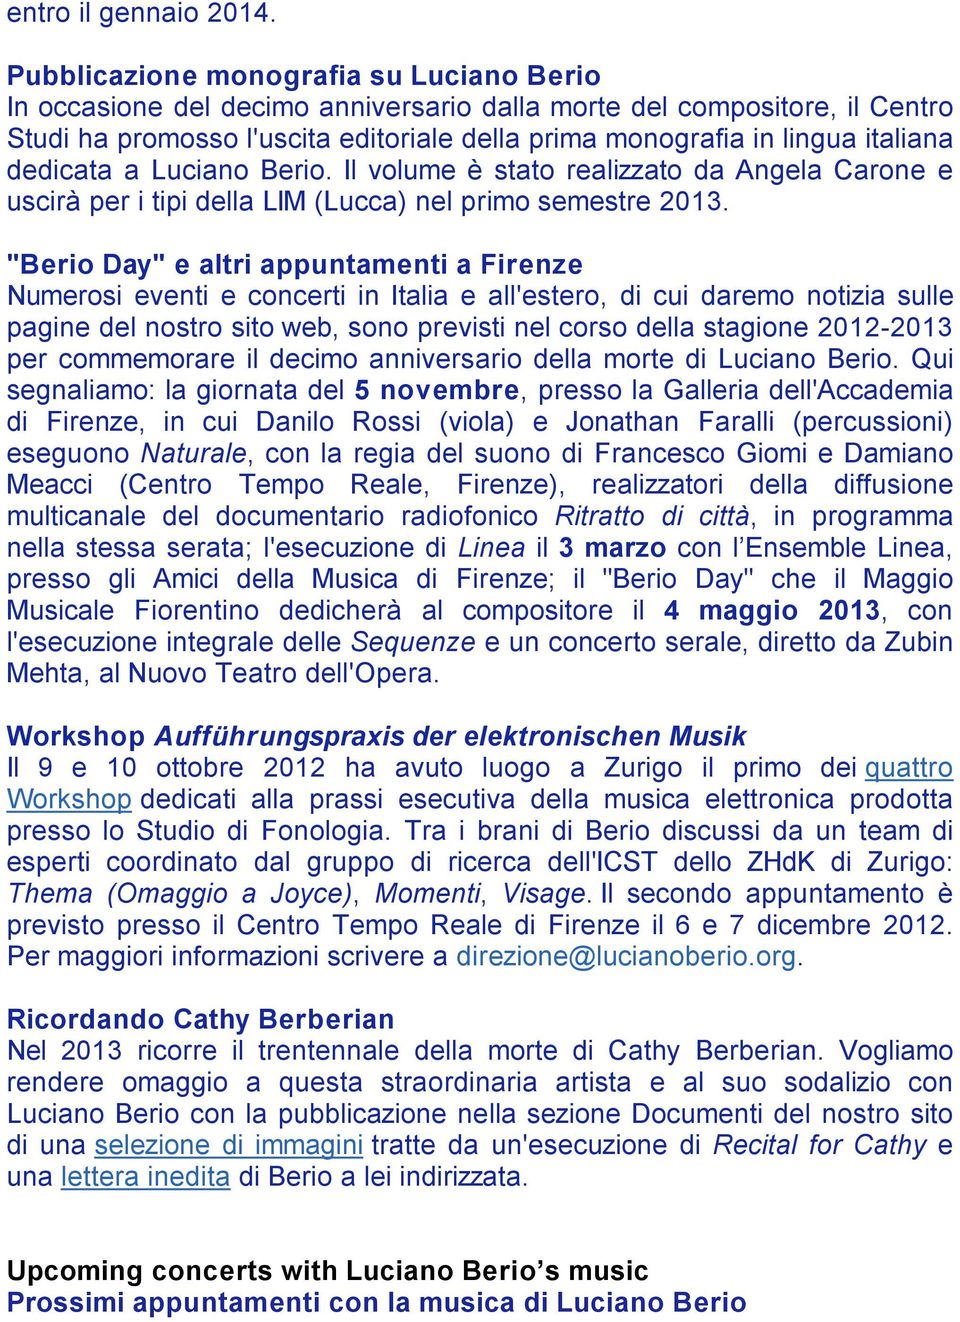 dedicata a Luciano Berio. Il volume è stato realizzato da Angela Carone e uscirà per i tipi della LIM (Lucca) nel primo semestre 2013.